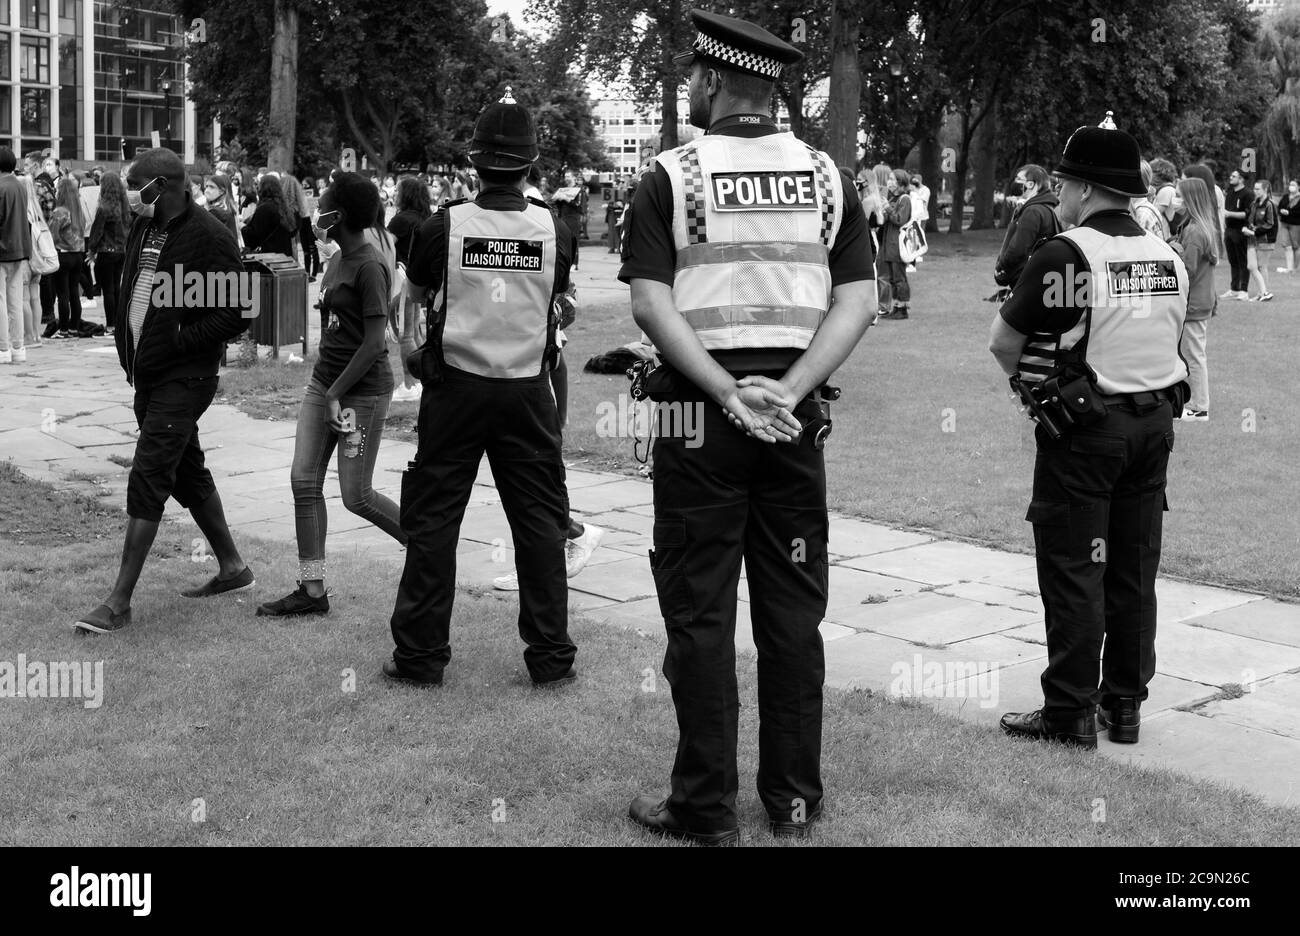 Gli ufficiali di polizia osservano i manifestanti Black Lives Matter durante il rally al Queens Gardens il 11 luglio 2020 a Hull, nello Yorkshire, Regno Unito. Foto Stock